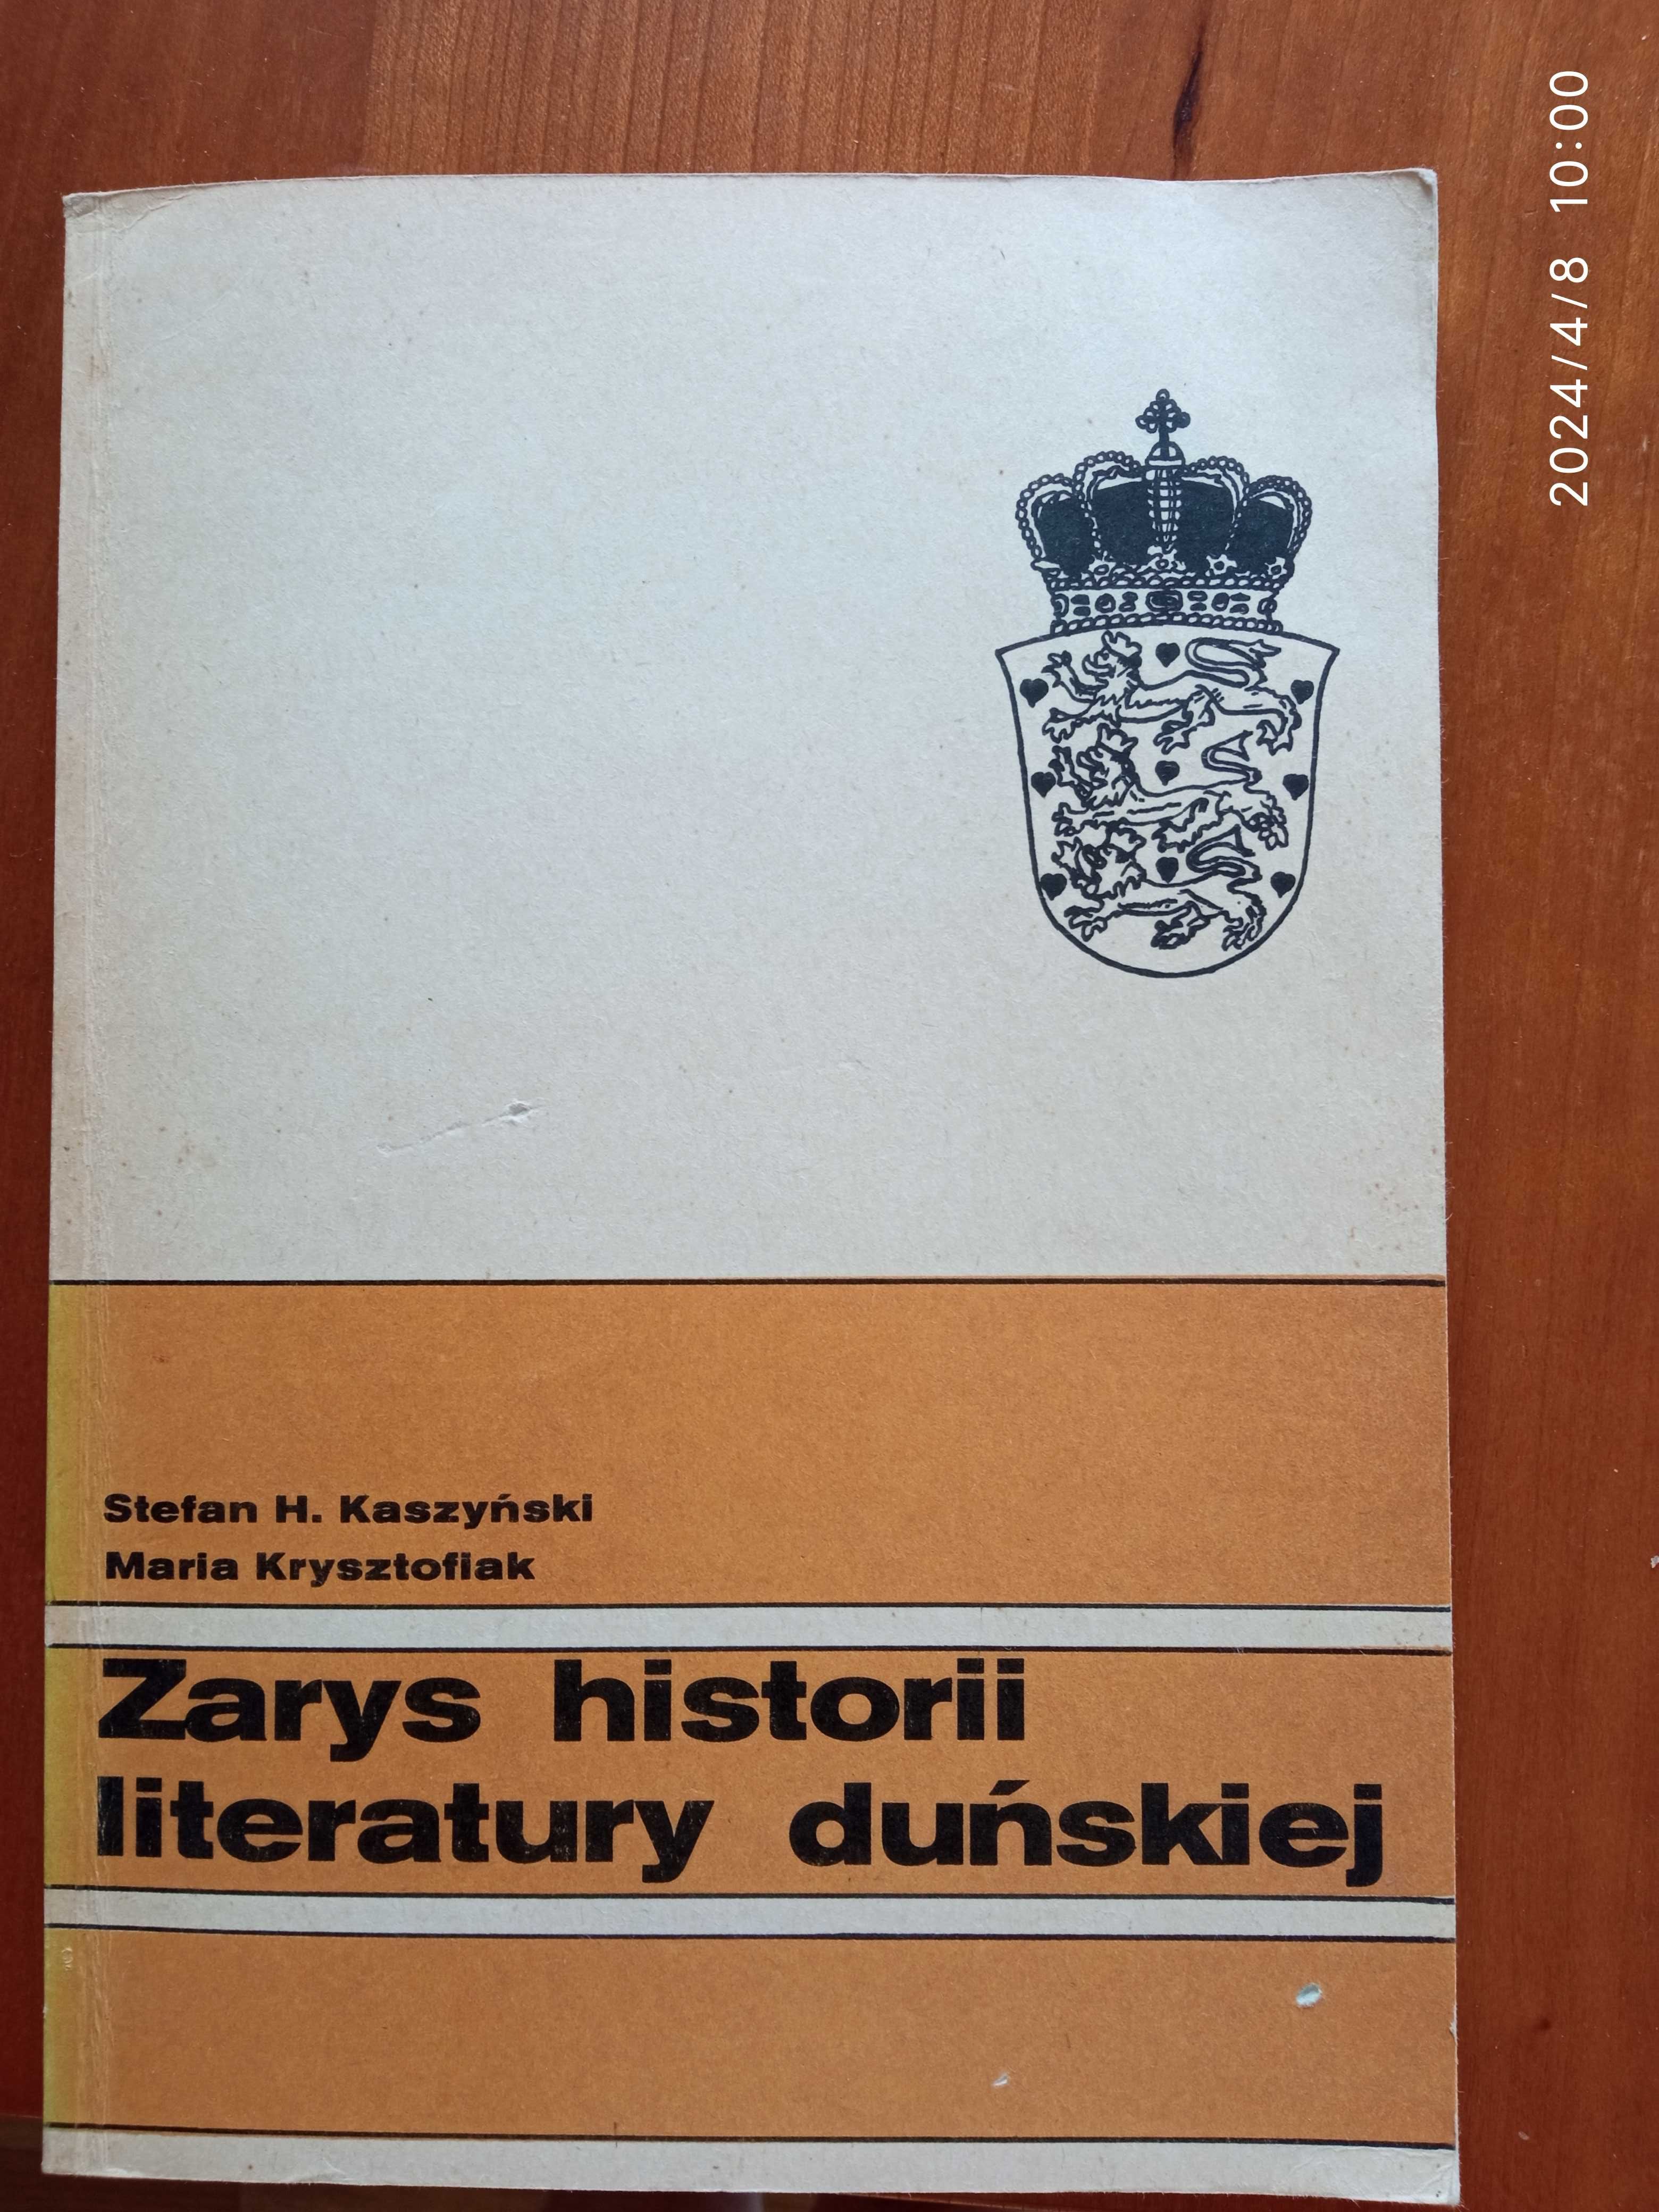 Zarys historii literatury duńskiej